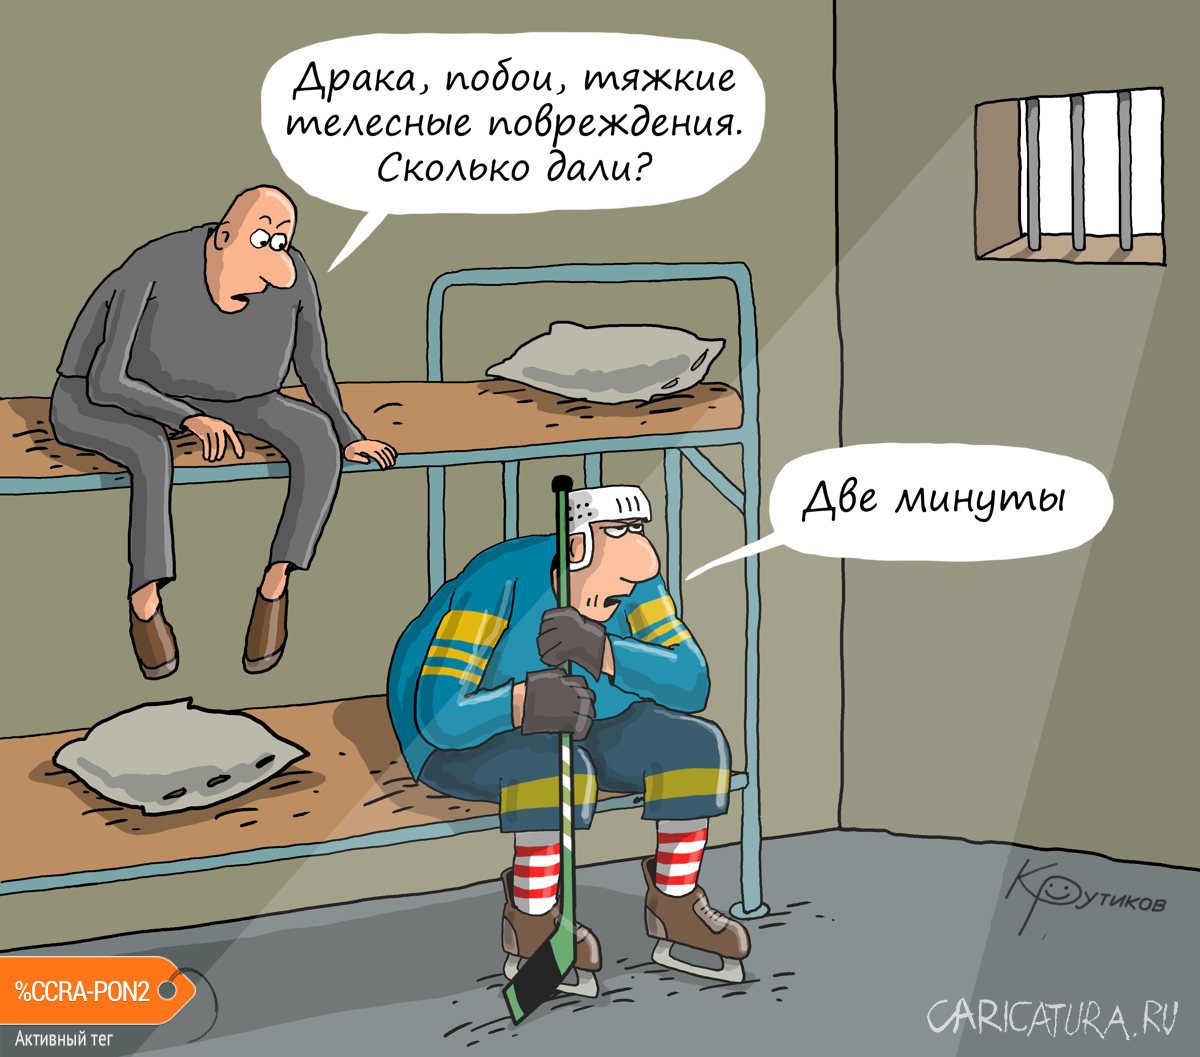 Карикатура "Наказание", Николай Крутиков